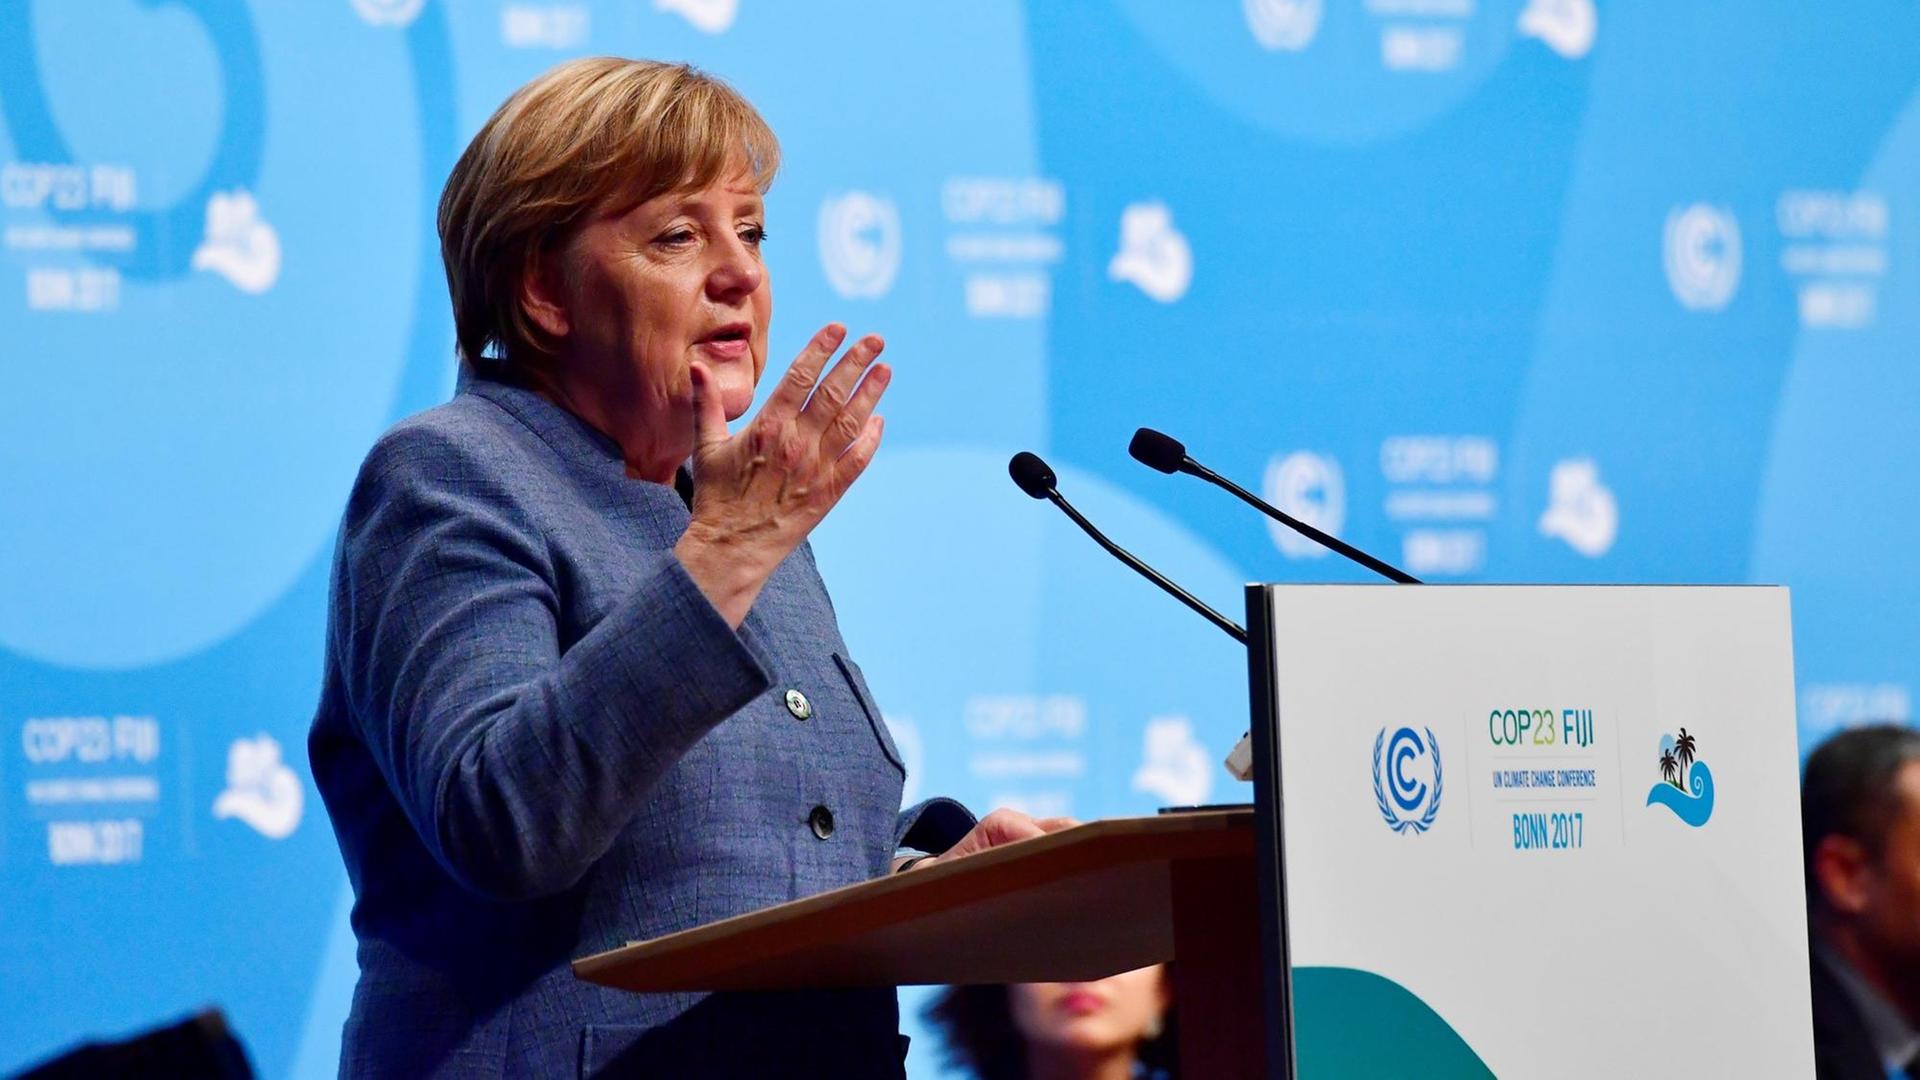 Bundeskanzlerin Merkel auf der Weltklimakonferenz in Bonn 15. 11.17.